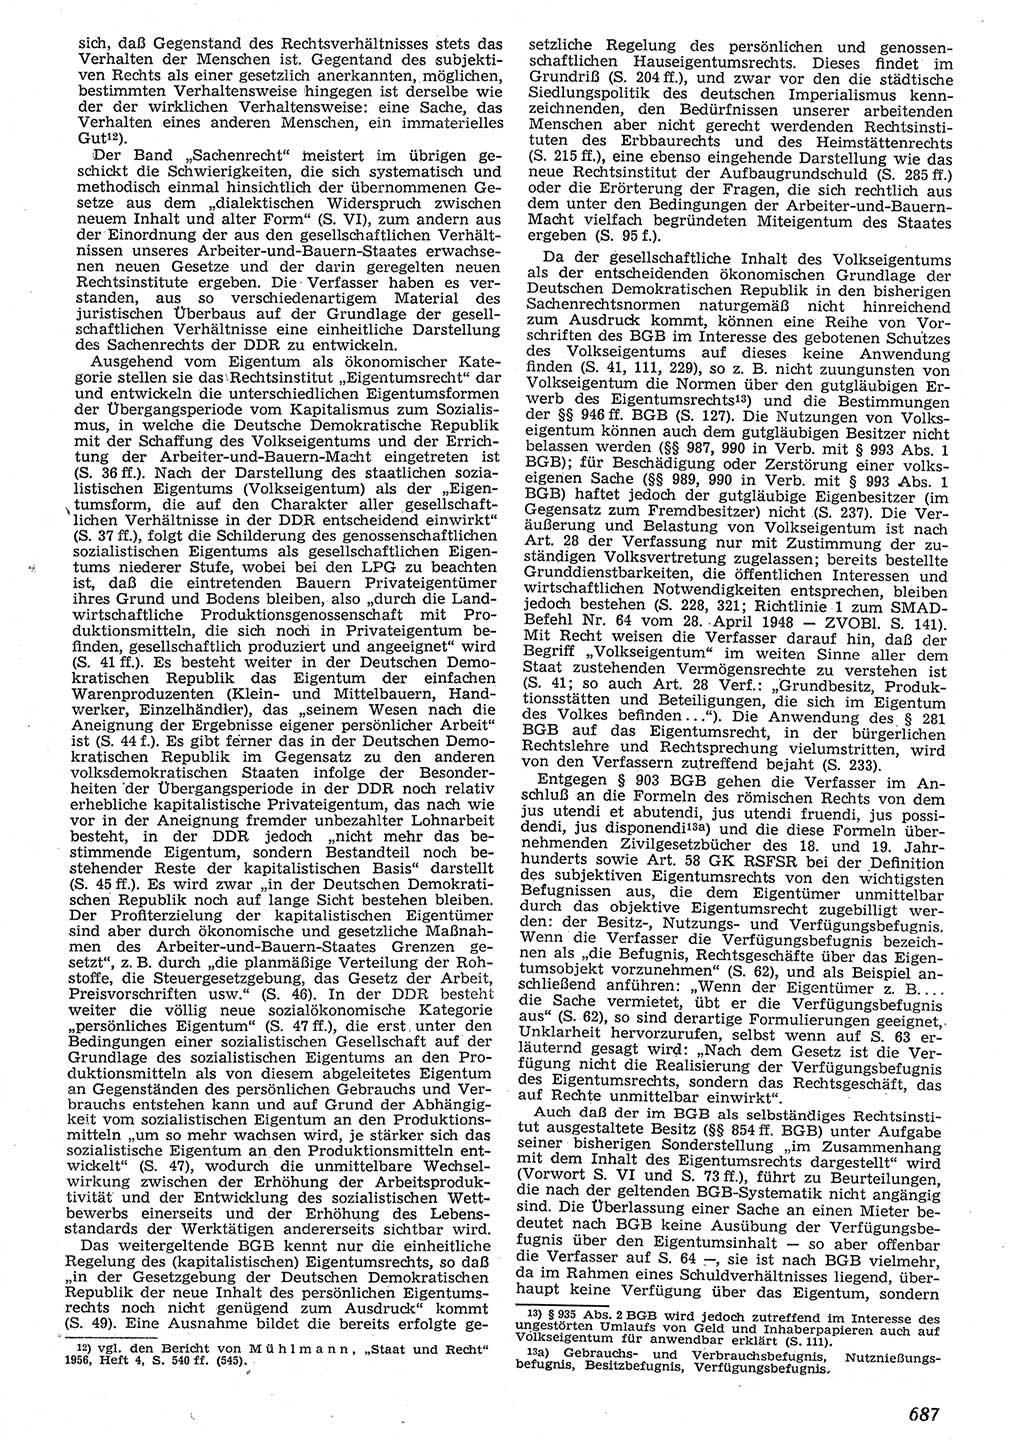 Neue Justiz (NJ), Zeitschrift für Recht und Rechtswissenschaft [Deutsche Demokratische Republik (DDR)], 10. Jahrgang 1956, Seite 687 (NJ DDR 1956, S. 687)